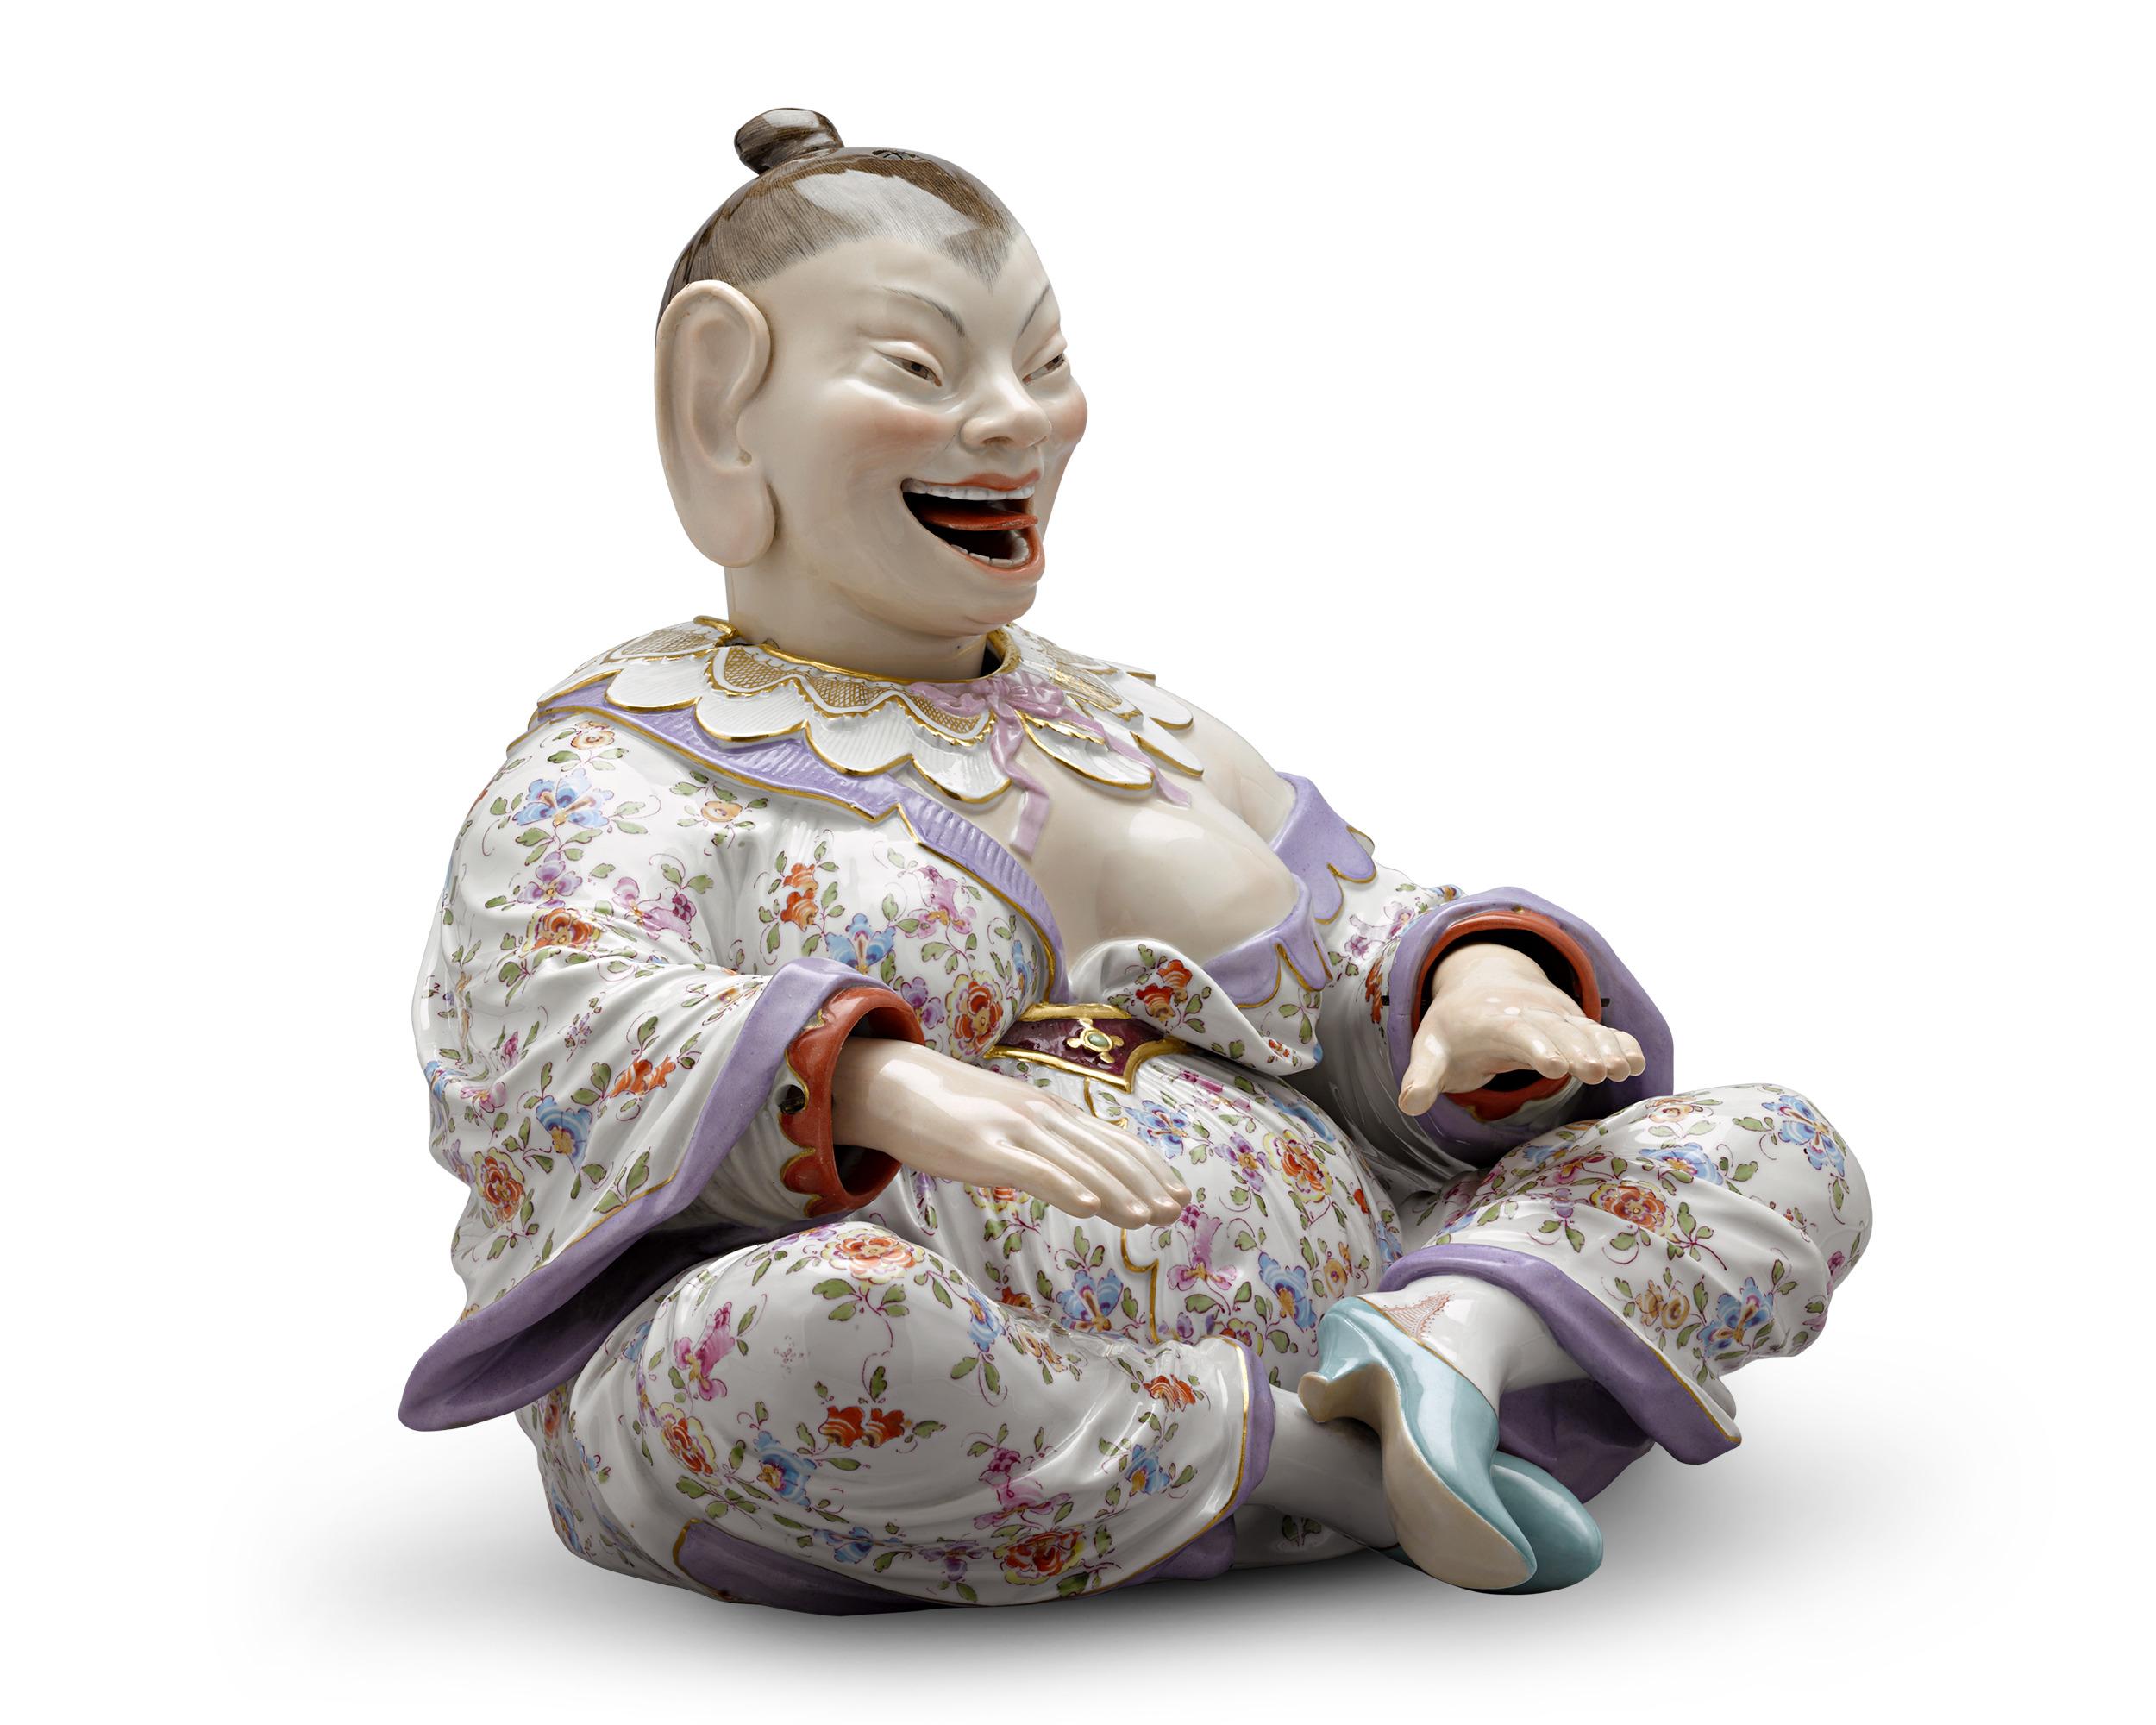 Diese bezaubernde Porzellanfigur aus dem legendären Meissen zeigt die Form einer asiatischen Frau in farbenprächtigen Gewändern. Das perfekt ausbalancierte Design enthält versteckte Federn im Inneren, die die Figur bei der kleinsten Erschütterung in